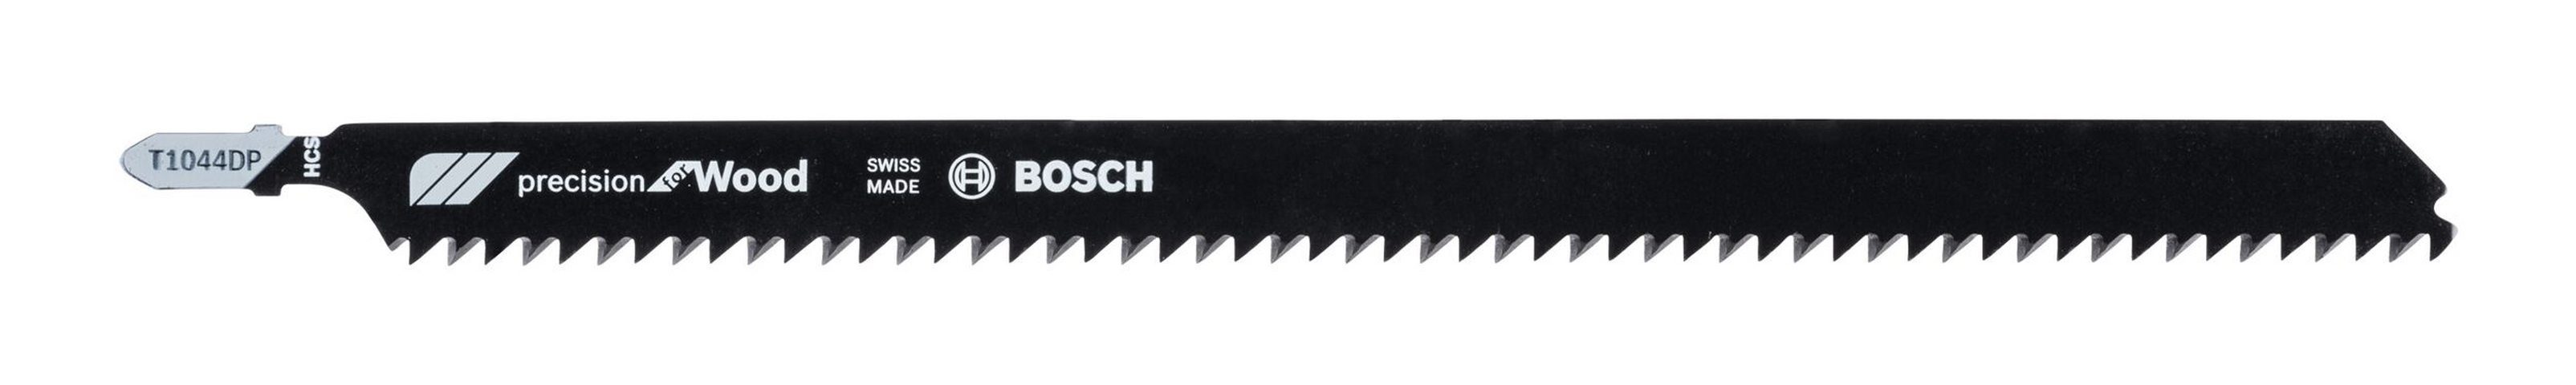 BOSCH Stichsägeblatt (3 Stück), T 1044 DP Precision for Wood - 3er-Pack